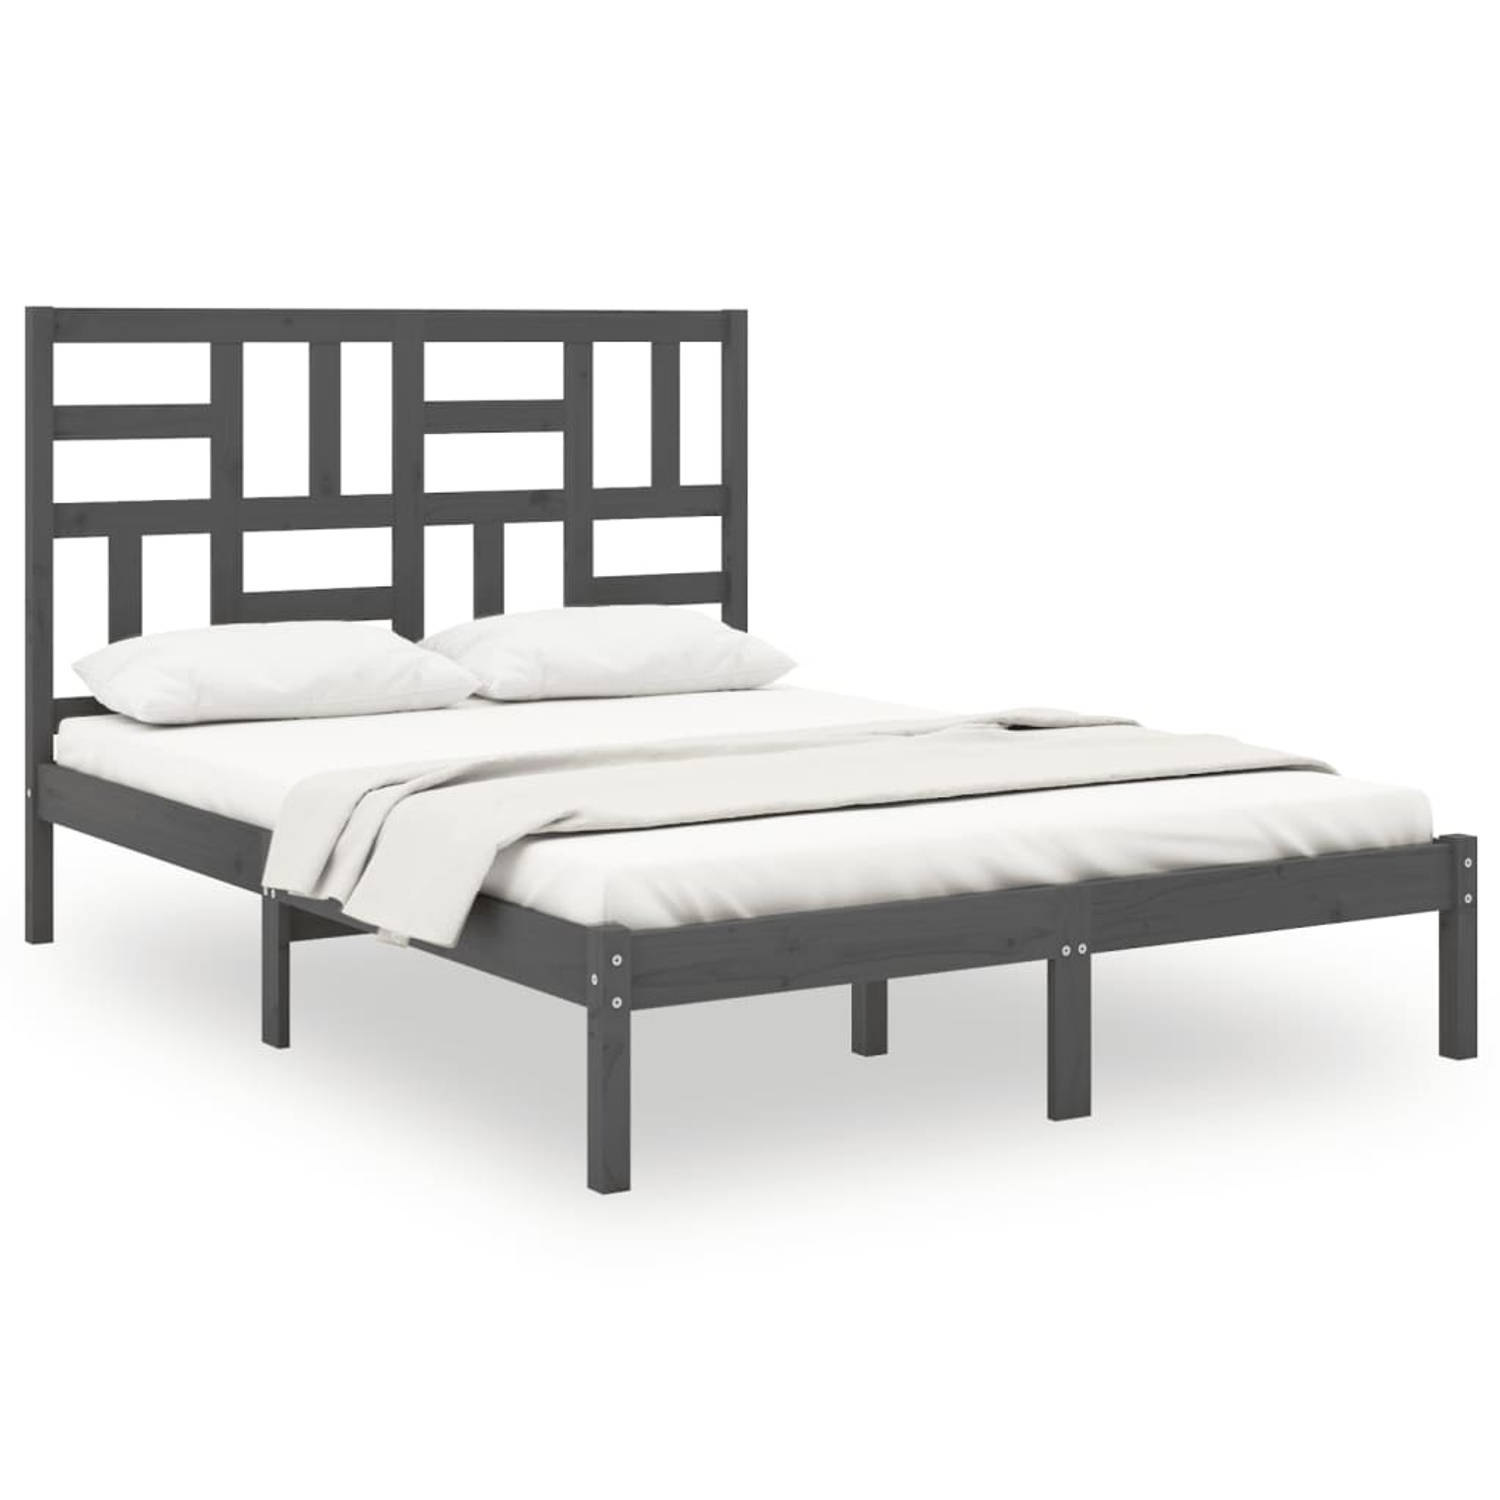 The Living Store Bedframe massief hout grijs 160x200 cm - Bedframe - Bedframes - Bed - Bedbodem - Ledikant - Bed Frame - Massief Houten Bedframe - Slaapmeubel - Tweepersoonsbed - B